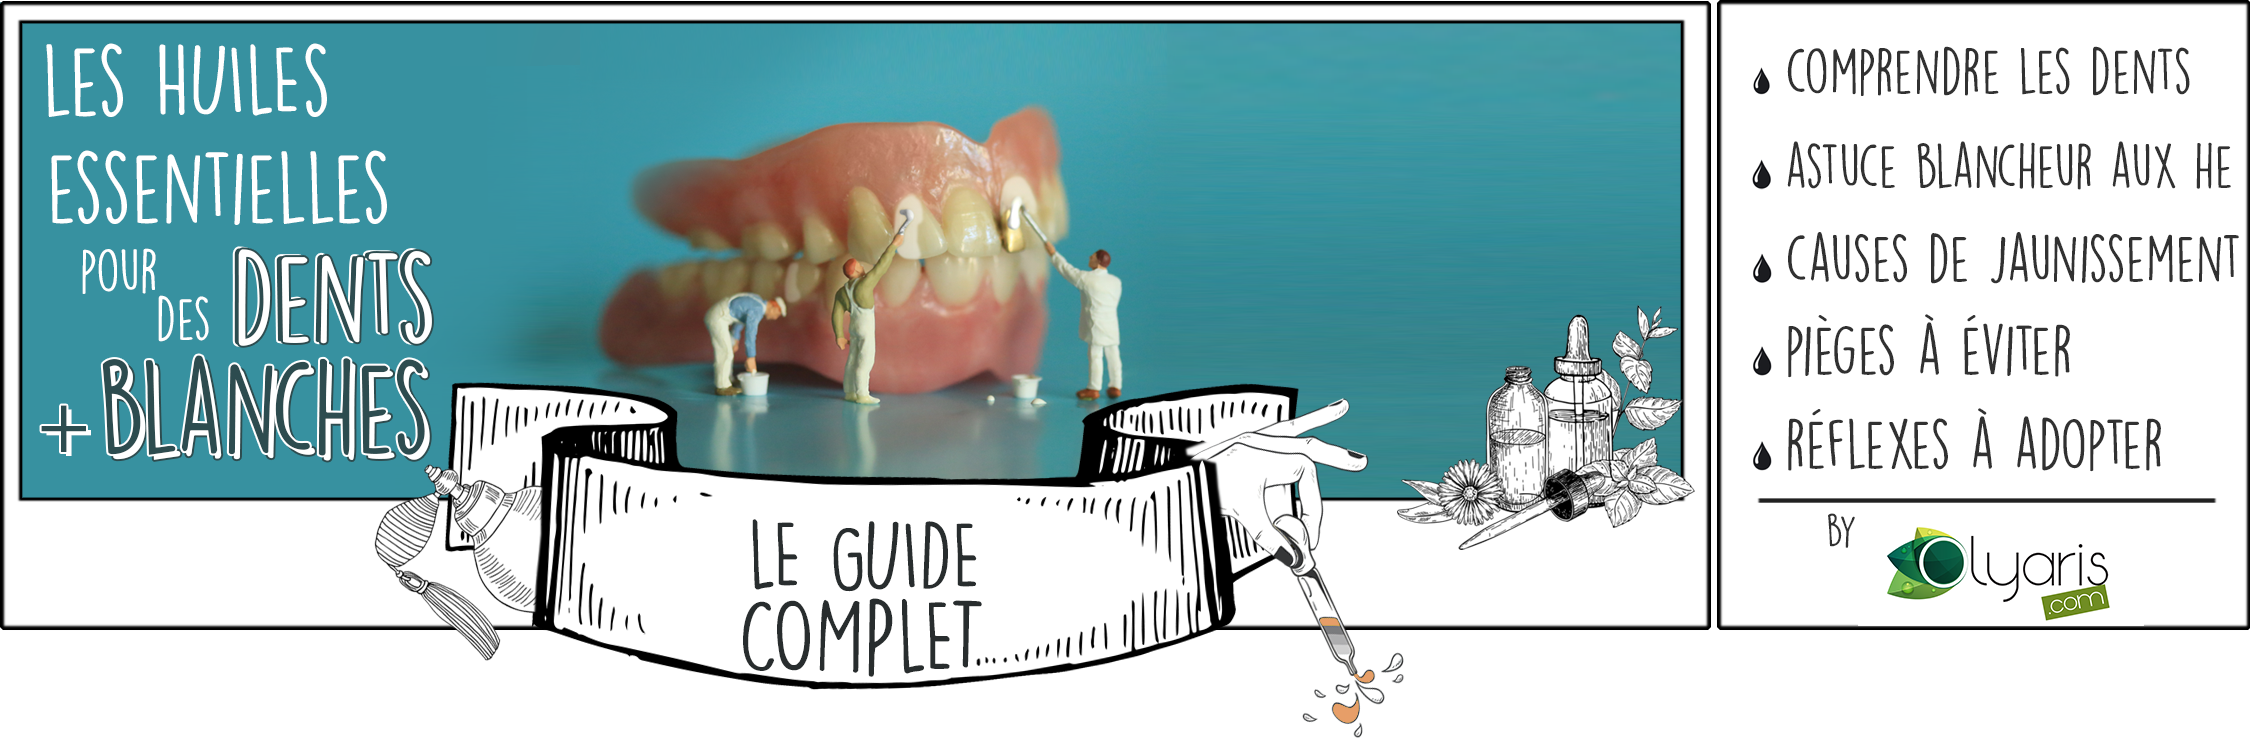 Des Dents Blanches avec les Huiles Essentielles : L'Astuce Naturelle par Olyaris